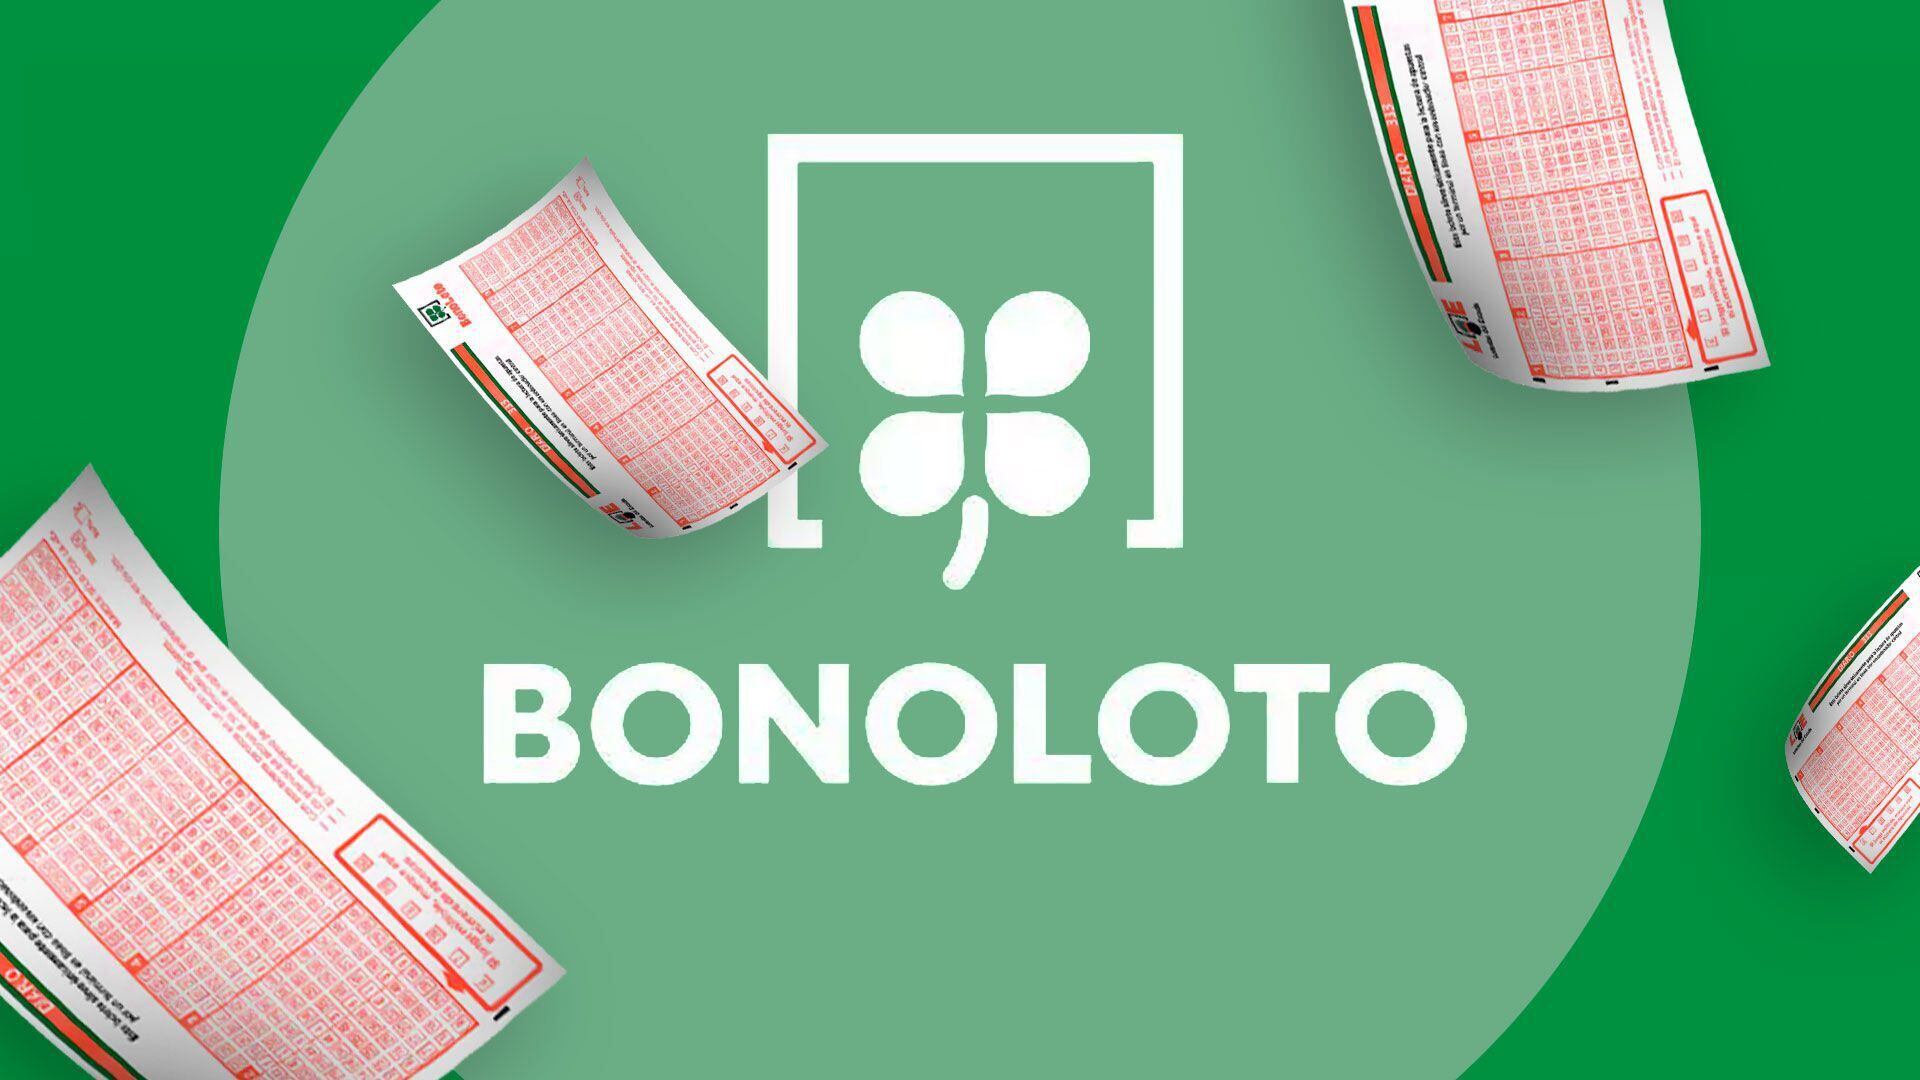 Bonoloto realiza sorteos todos los días de la semana. (Infobae/Jovani Pérez)